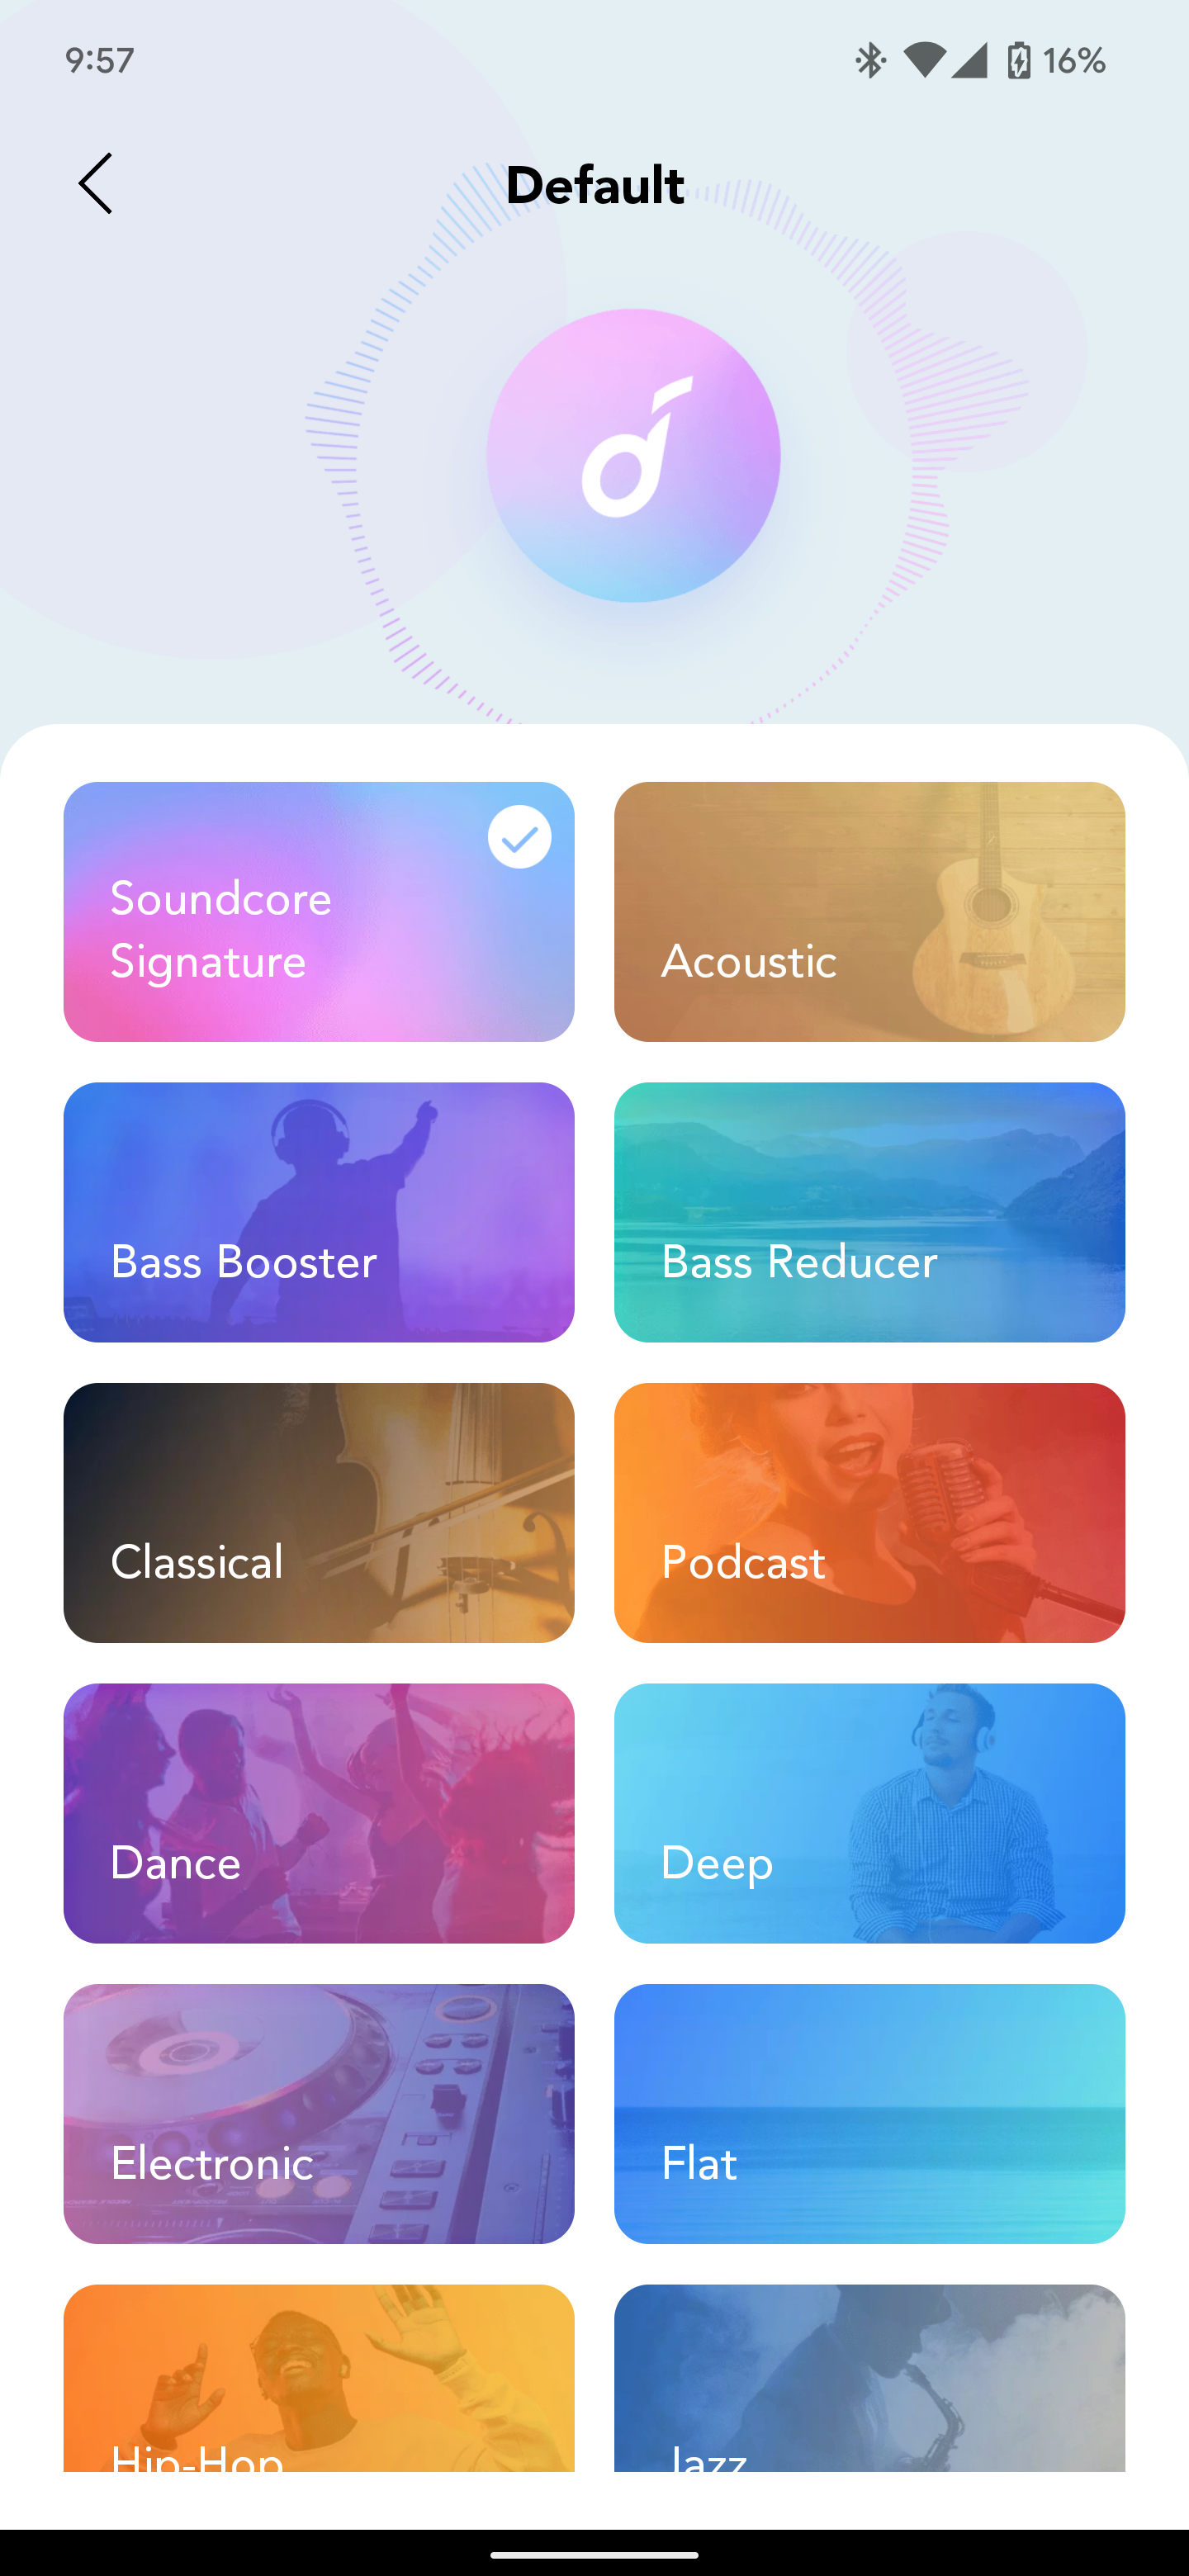 soundcore-app-2